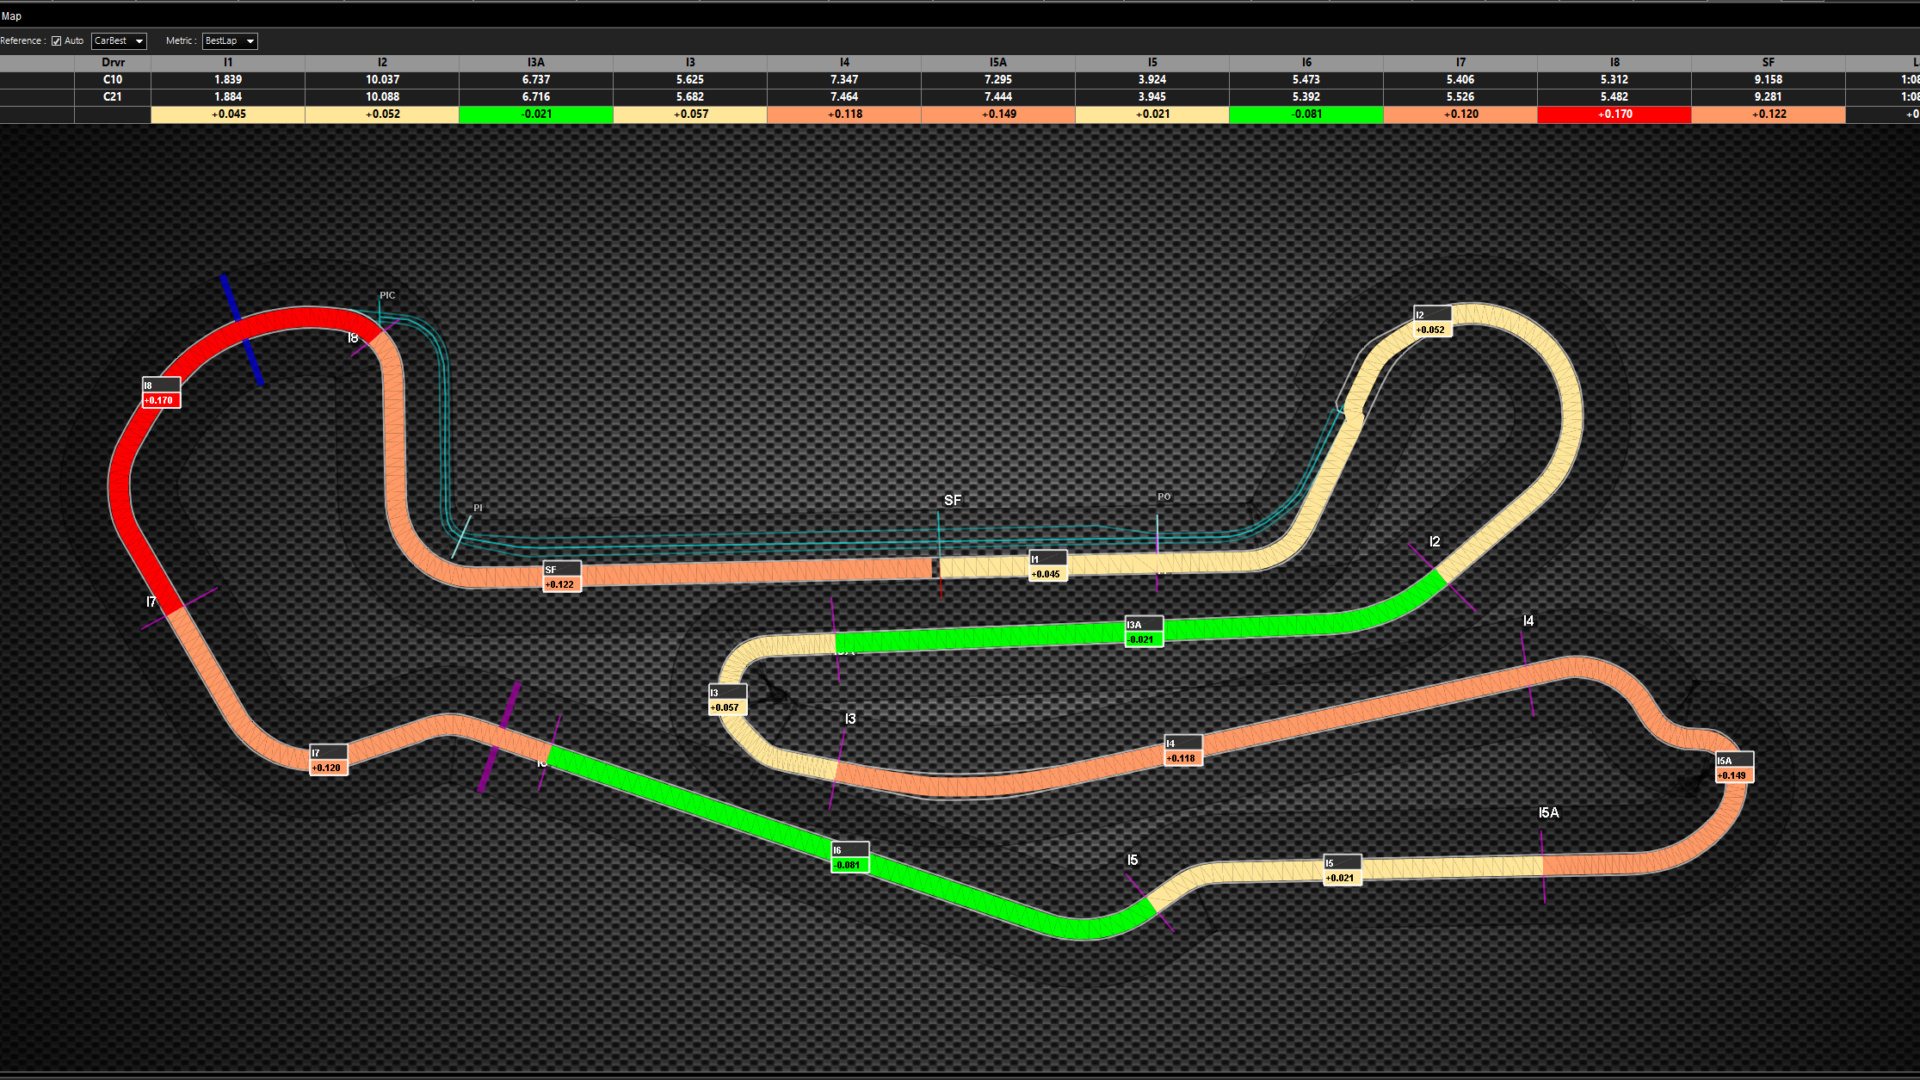 Graphique de la carte Time Deltas utilisée par les ingénieurs d'IndyCar pour identifier les sections du circuit où les concurrents gagnent en vitesse ou ont un avantage, facilitant ainsi la planification stratégique et l'analyse des performances.